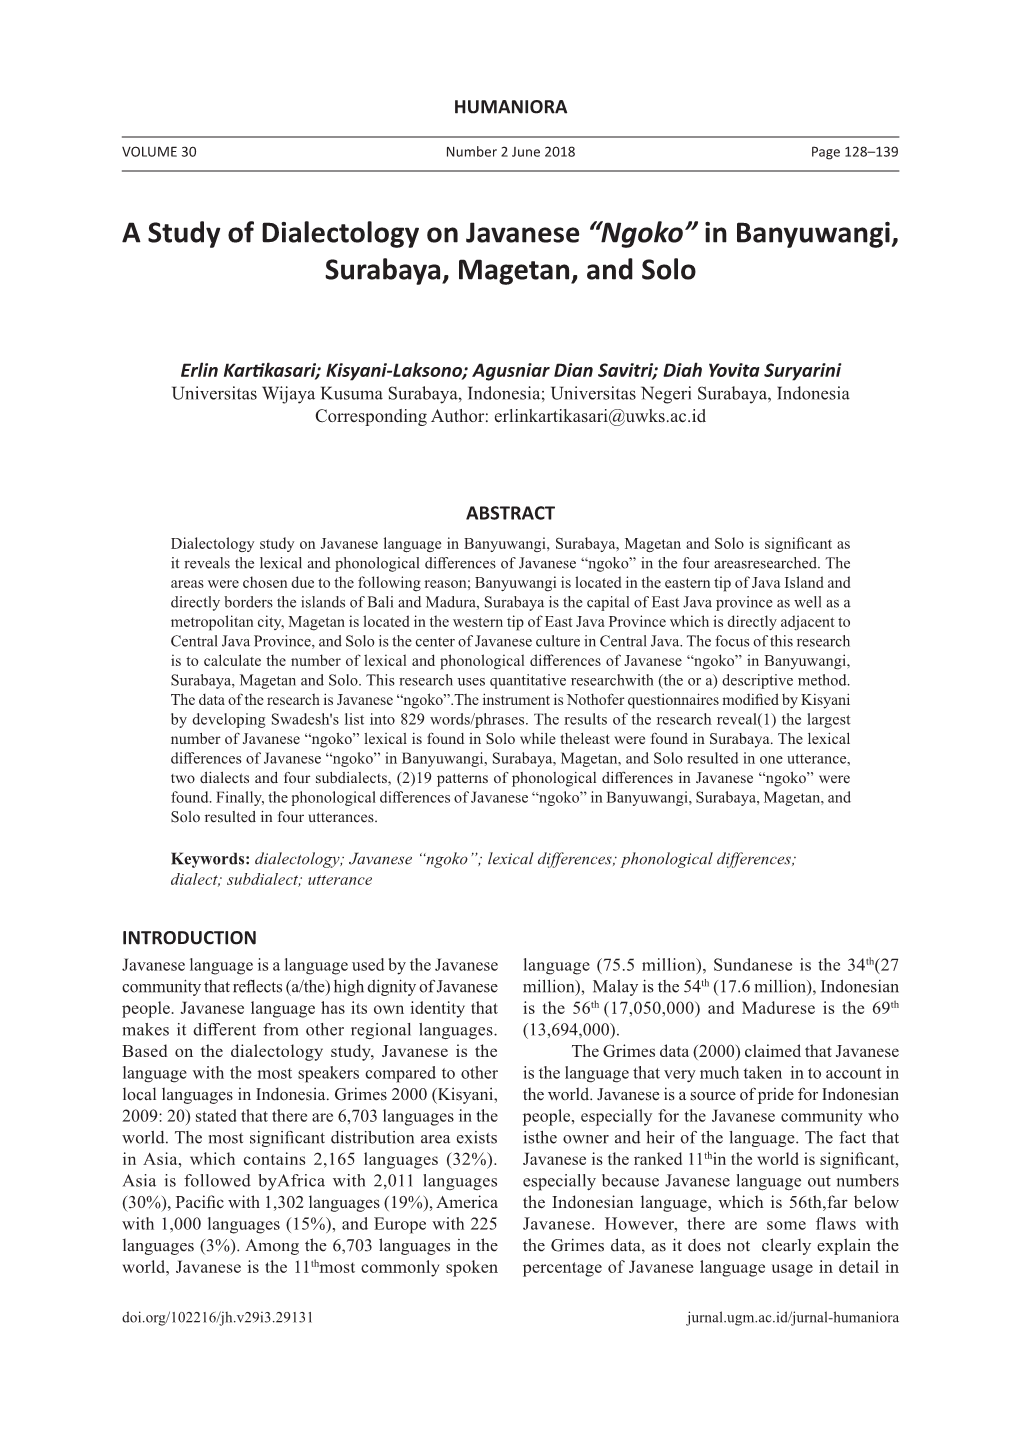 A Study of Dialectology on Javanese “Ngoko” in Banyuwangi, Surabaya, Magetan, and Solo